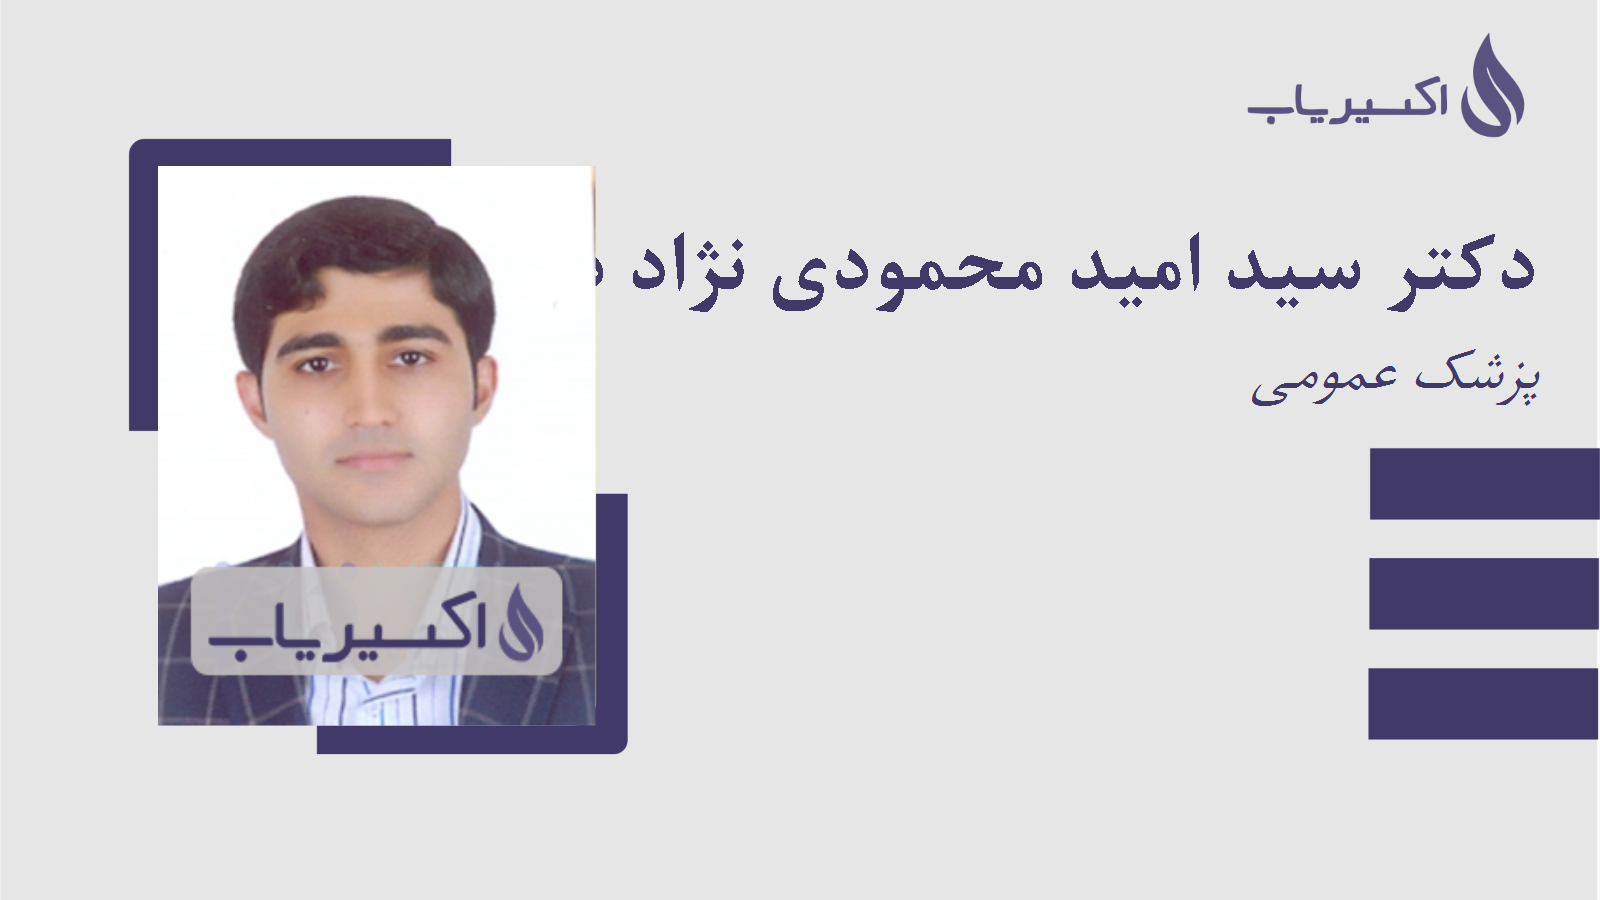 مطب دکتر سید امید محمودی نژاد دزفولی